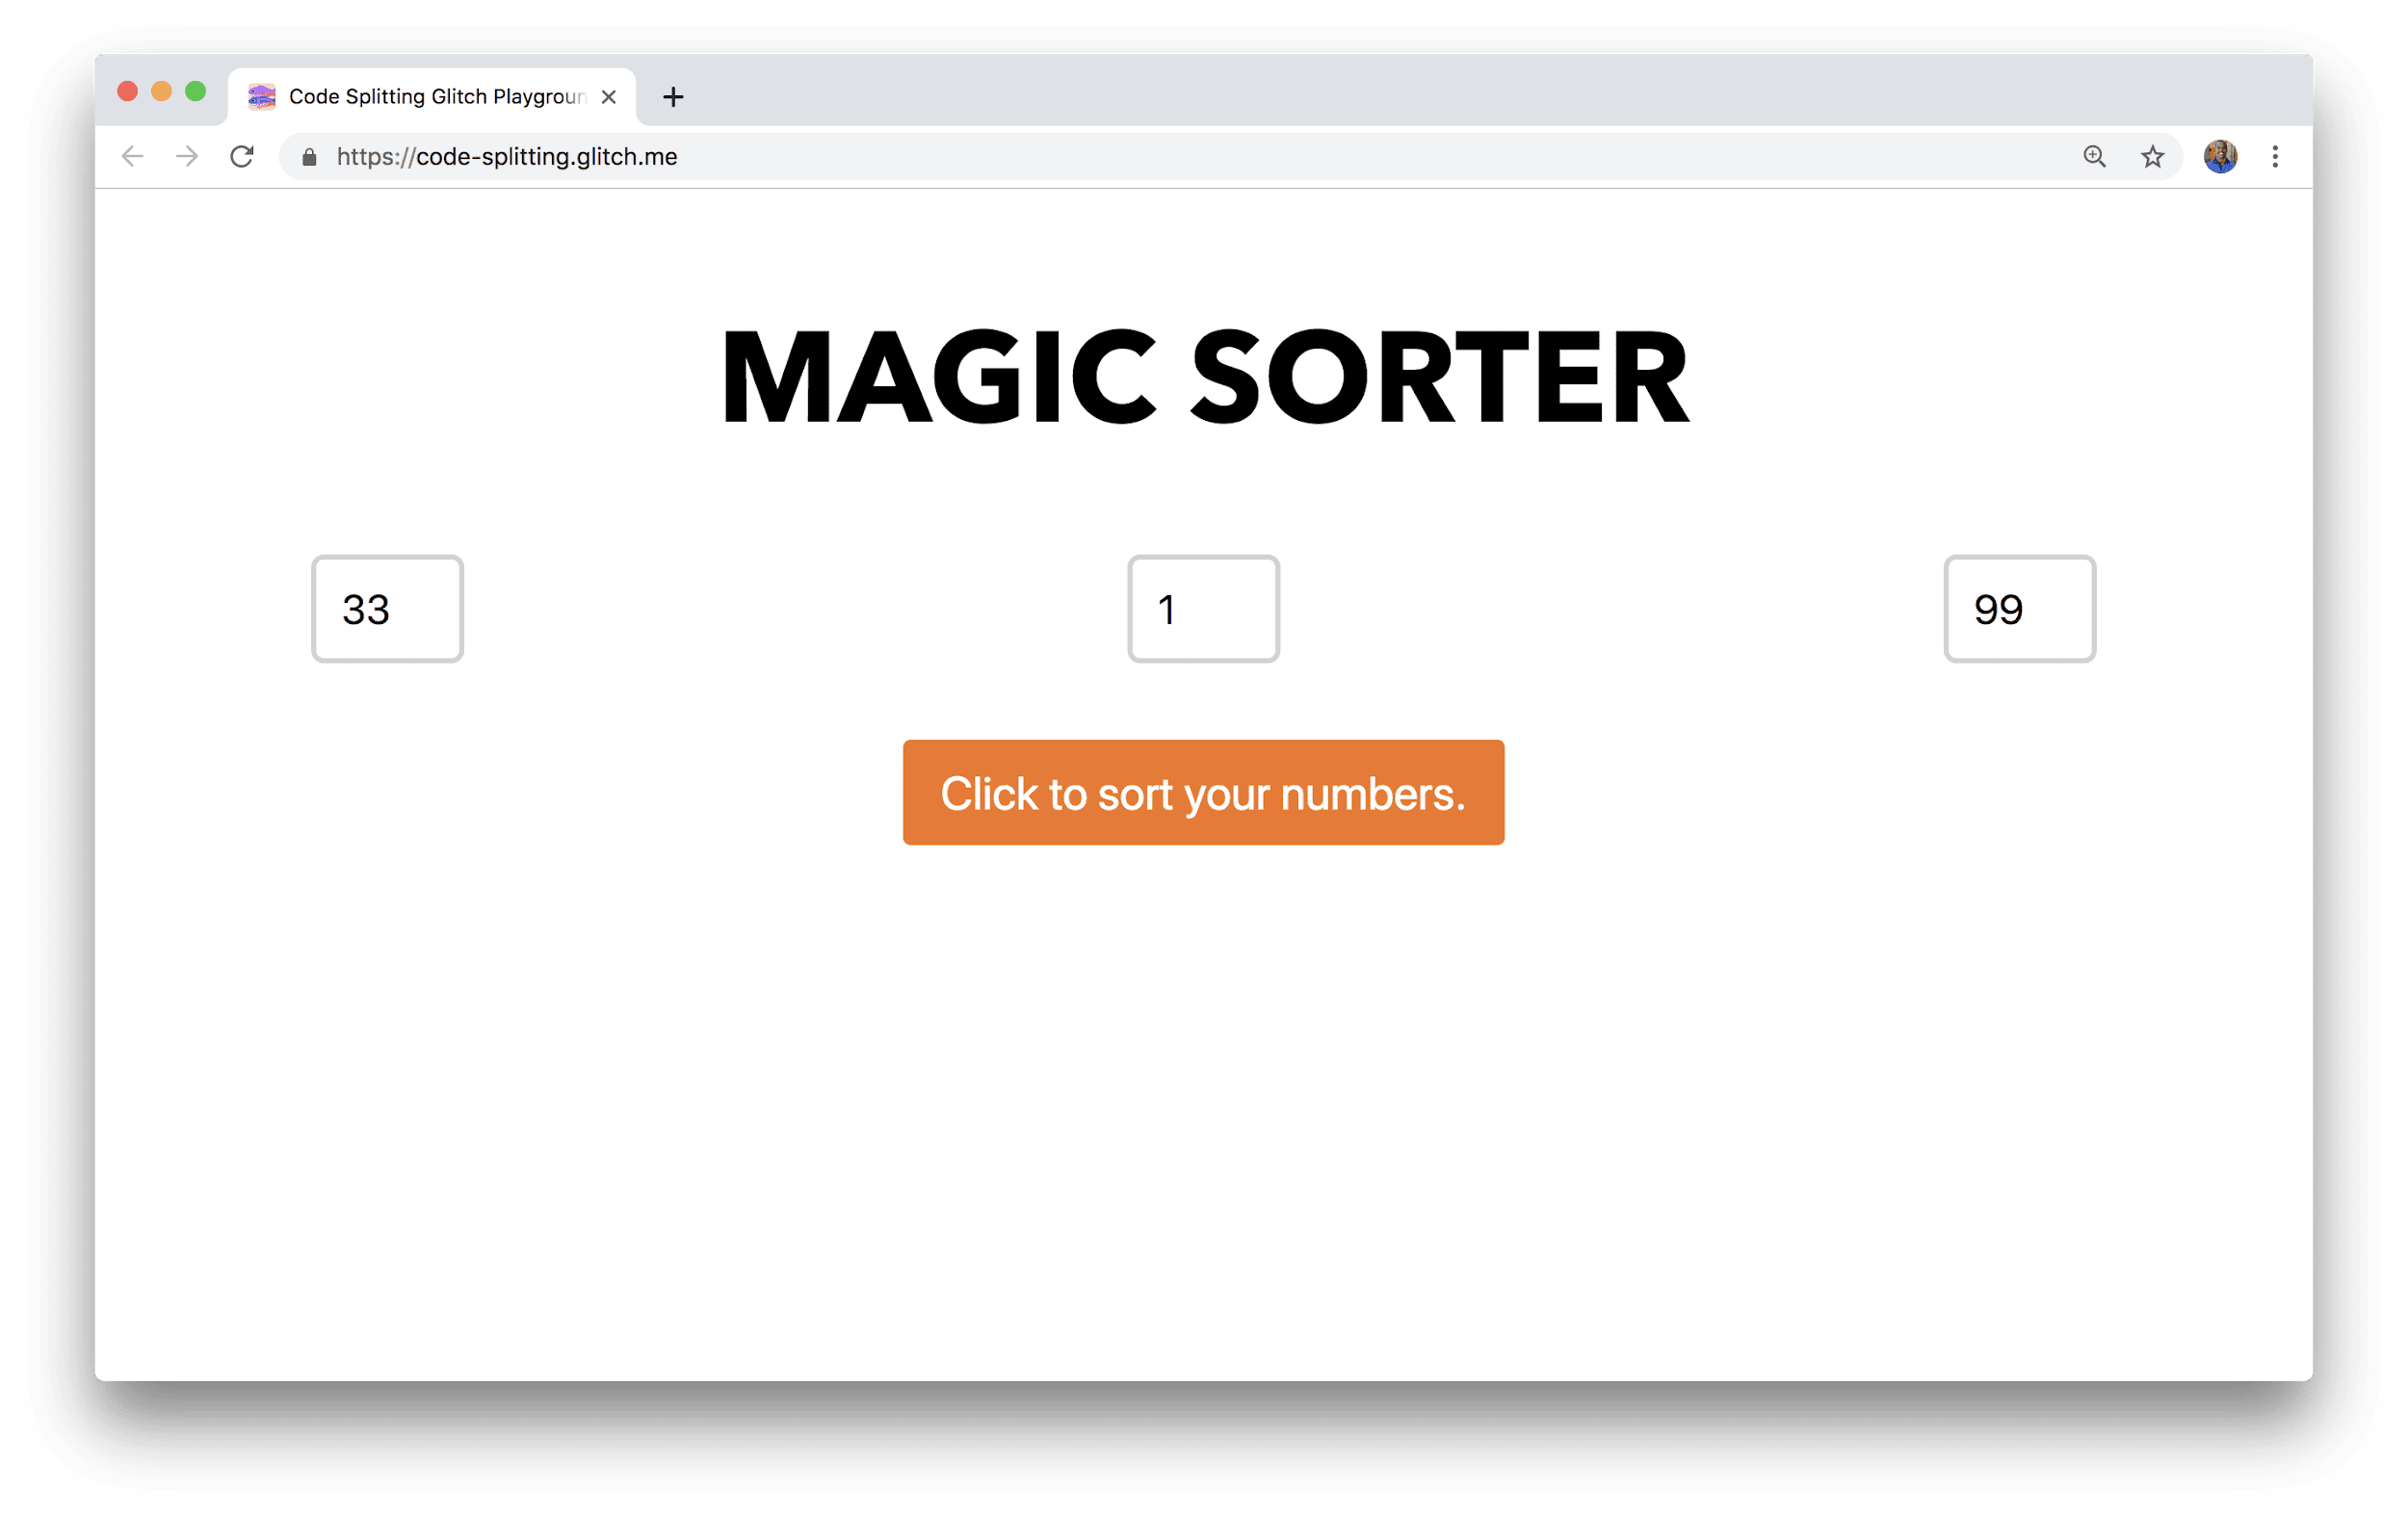 Okno przeglądarki z widoczną aplikacją o nazwie Magiczny sortownik z 3 polami do wpisania liczb i przyciskiem sortowania.